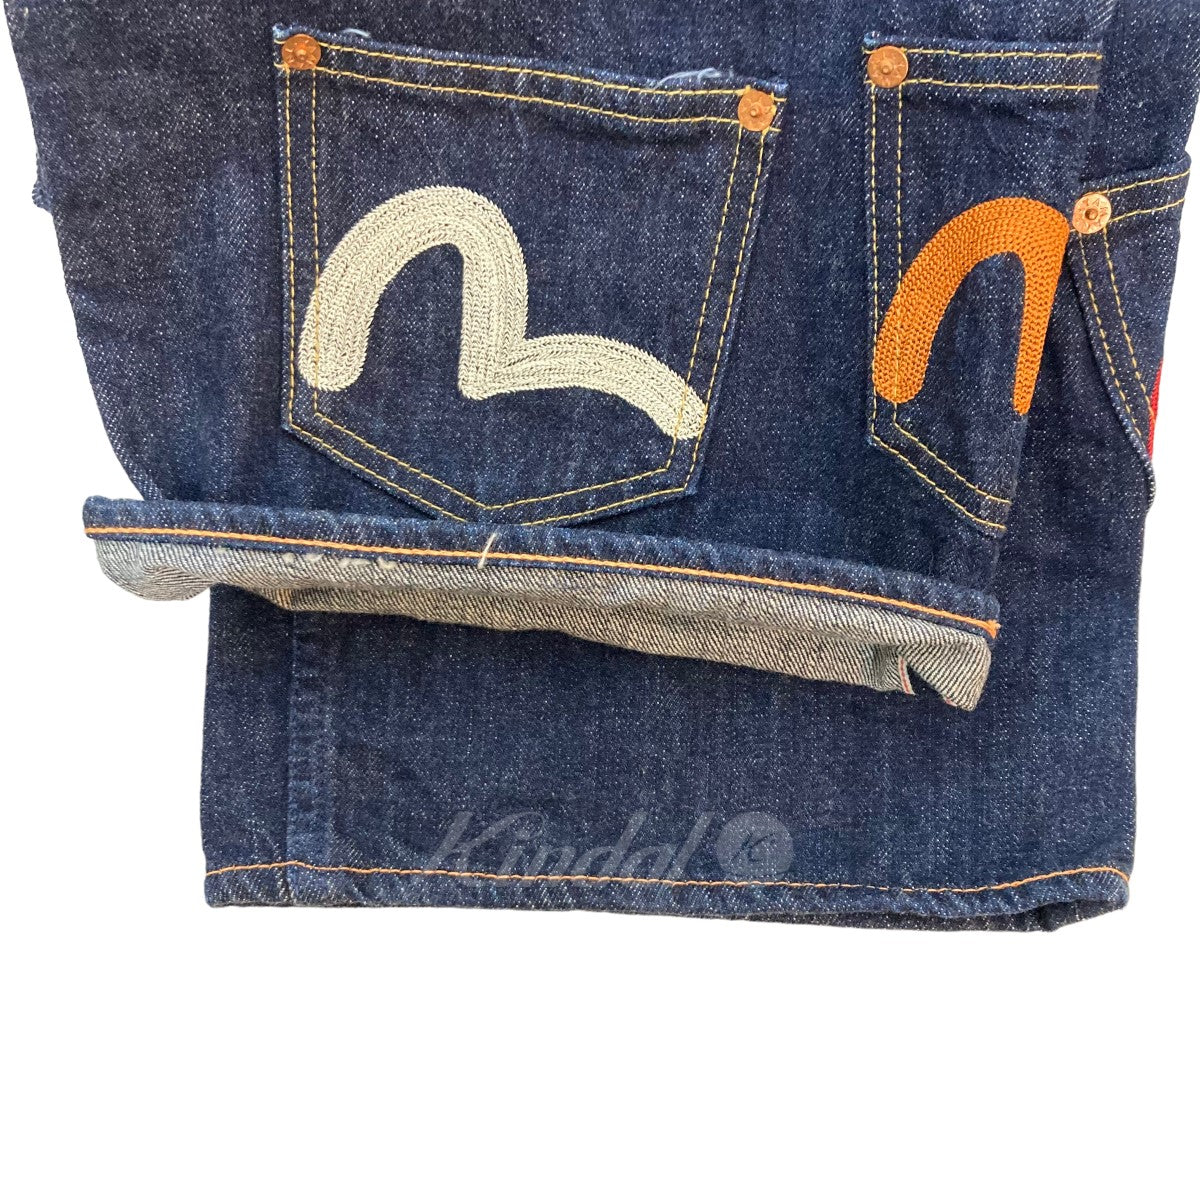 EVISU jeans(エビスジーンズ) EVISU 総刺繍 メニーポケット 塩谷ブラザーズ トラヴィス スコット 戎 デニムパンツ